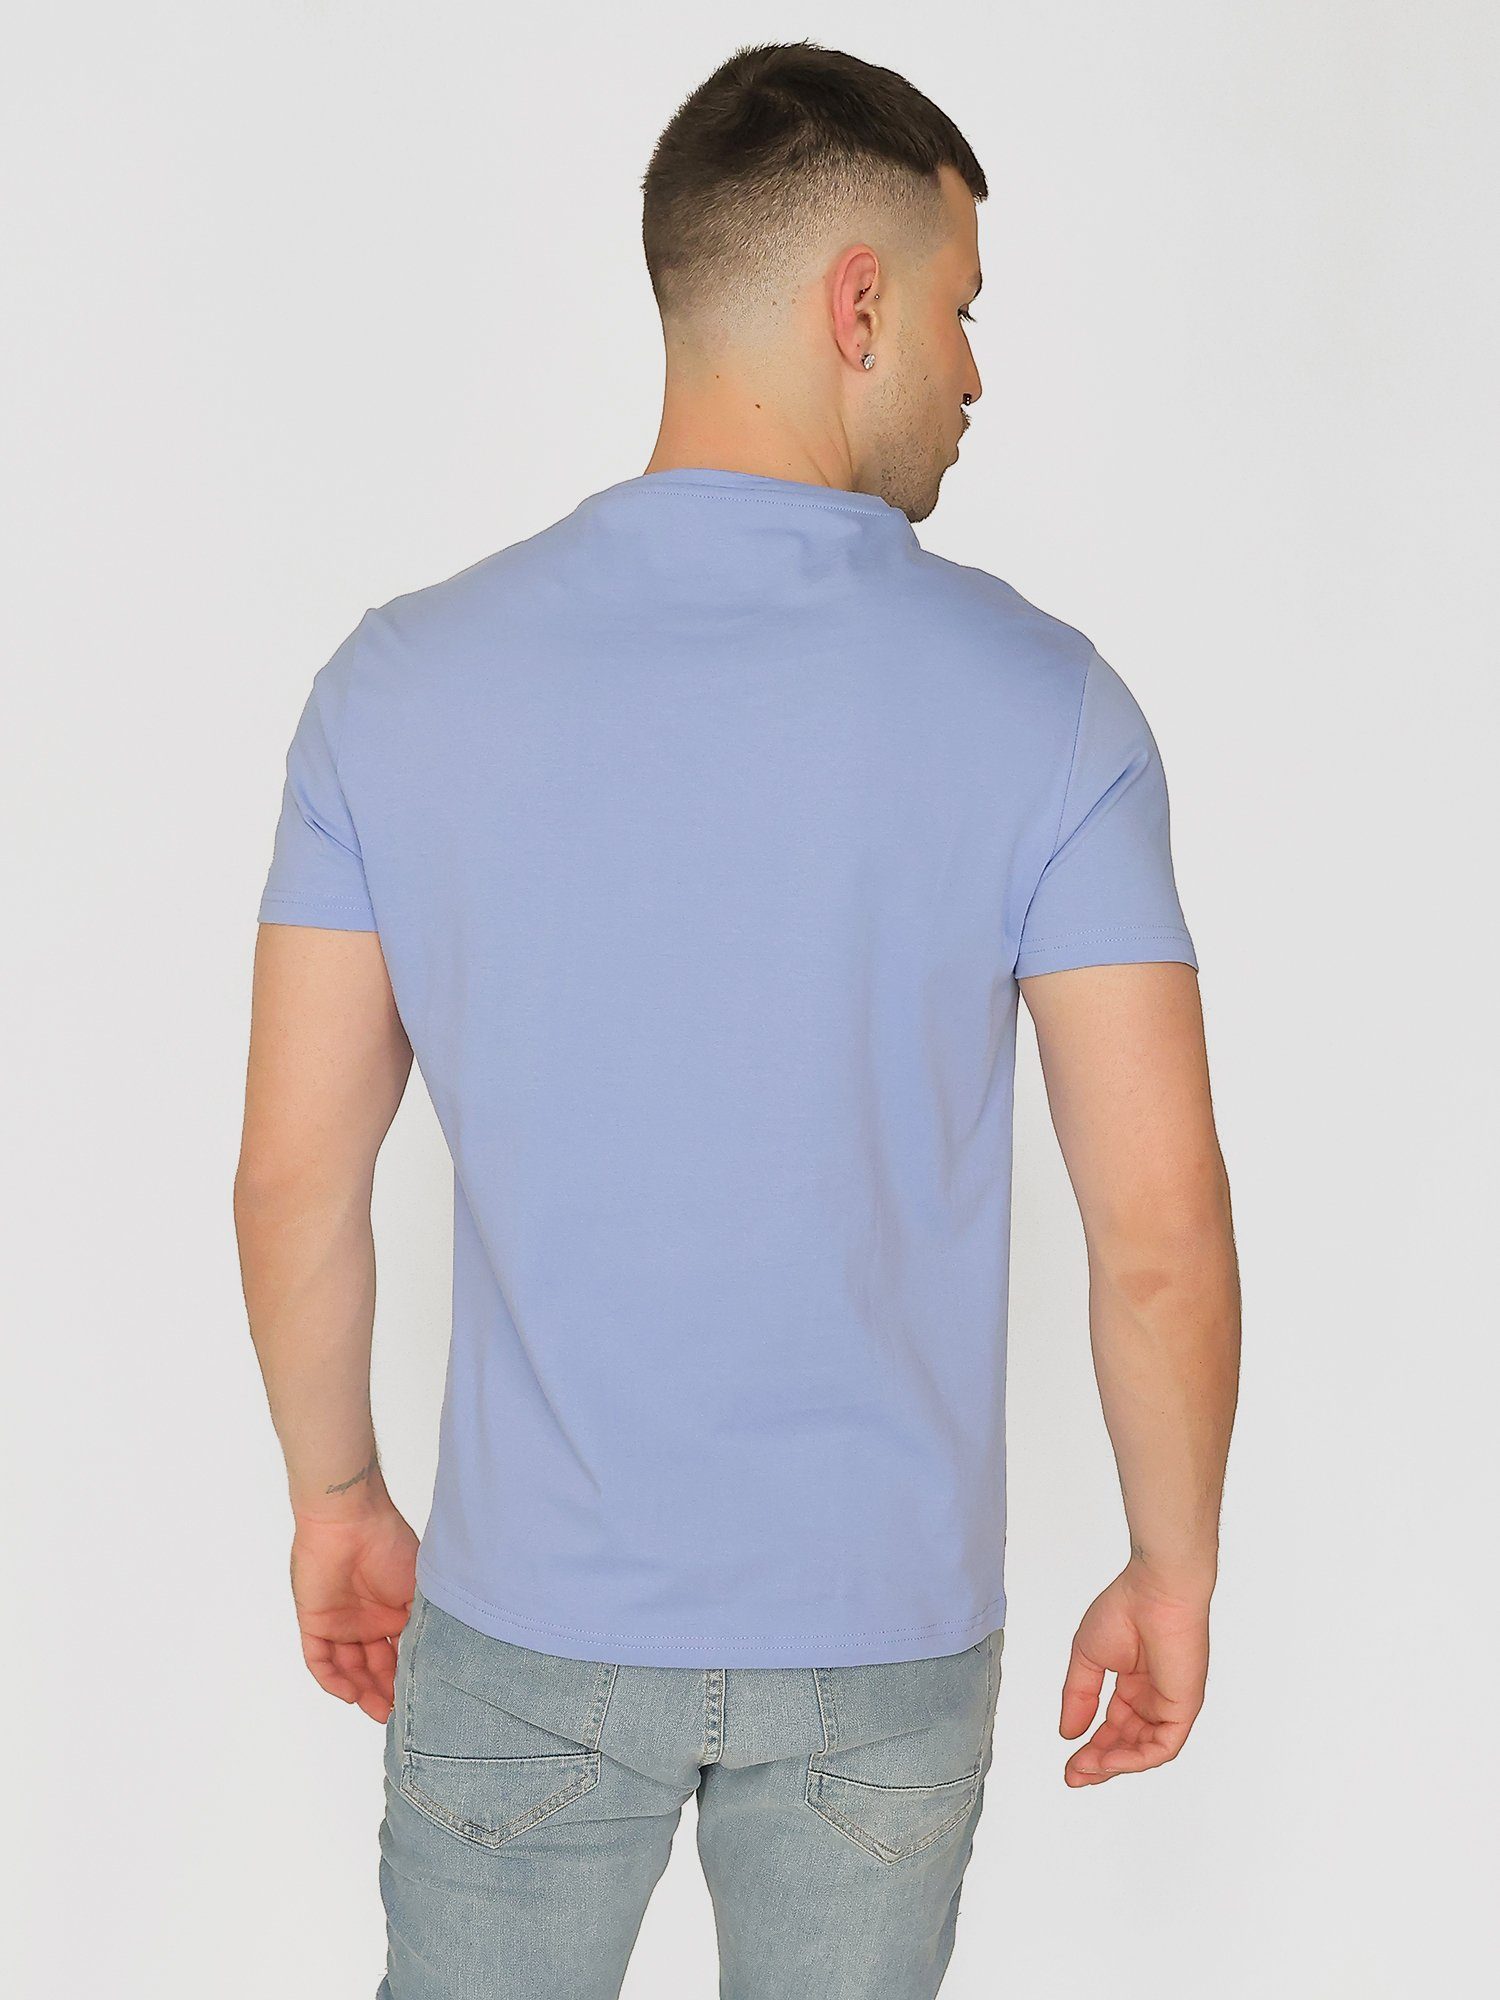 TOP GUN T-Shirt TG20213036 light blue